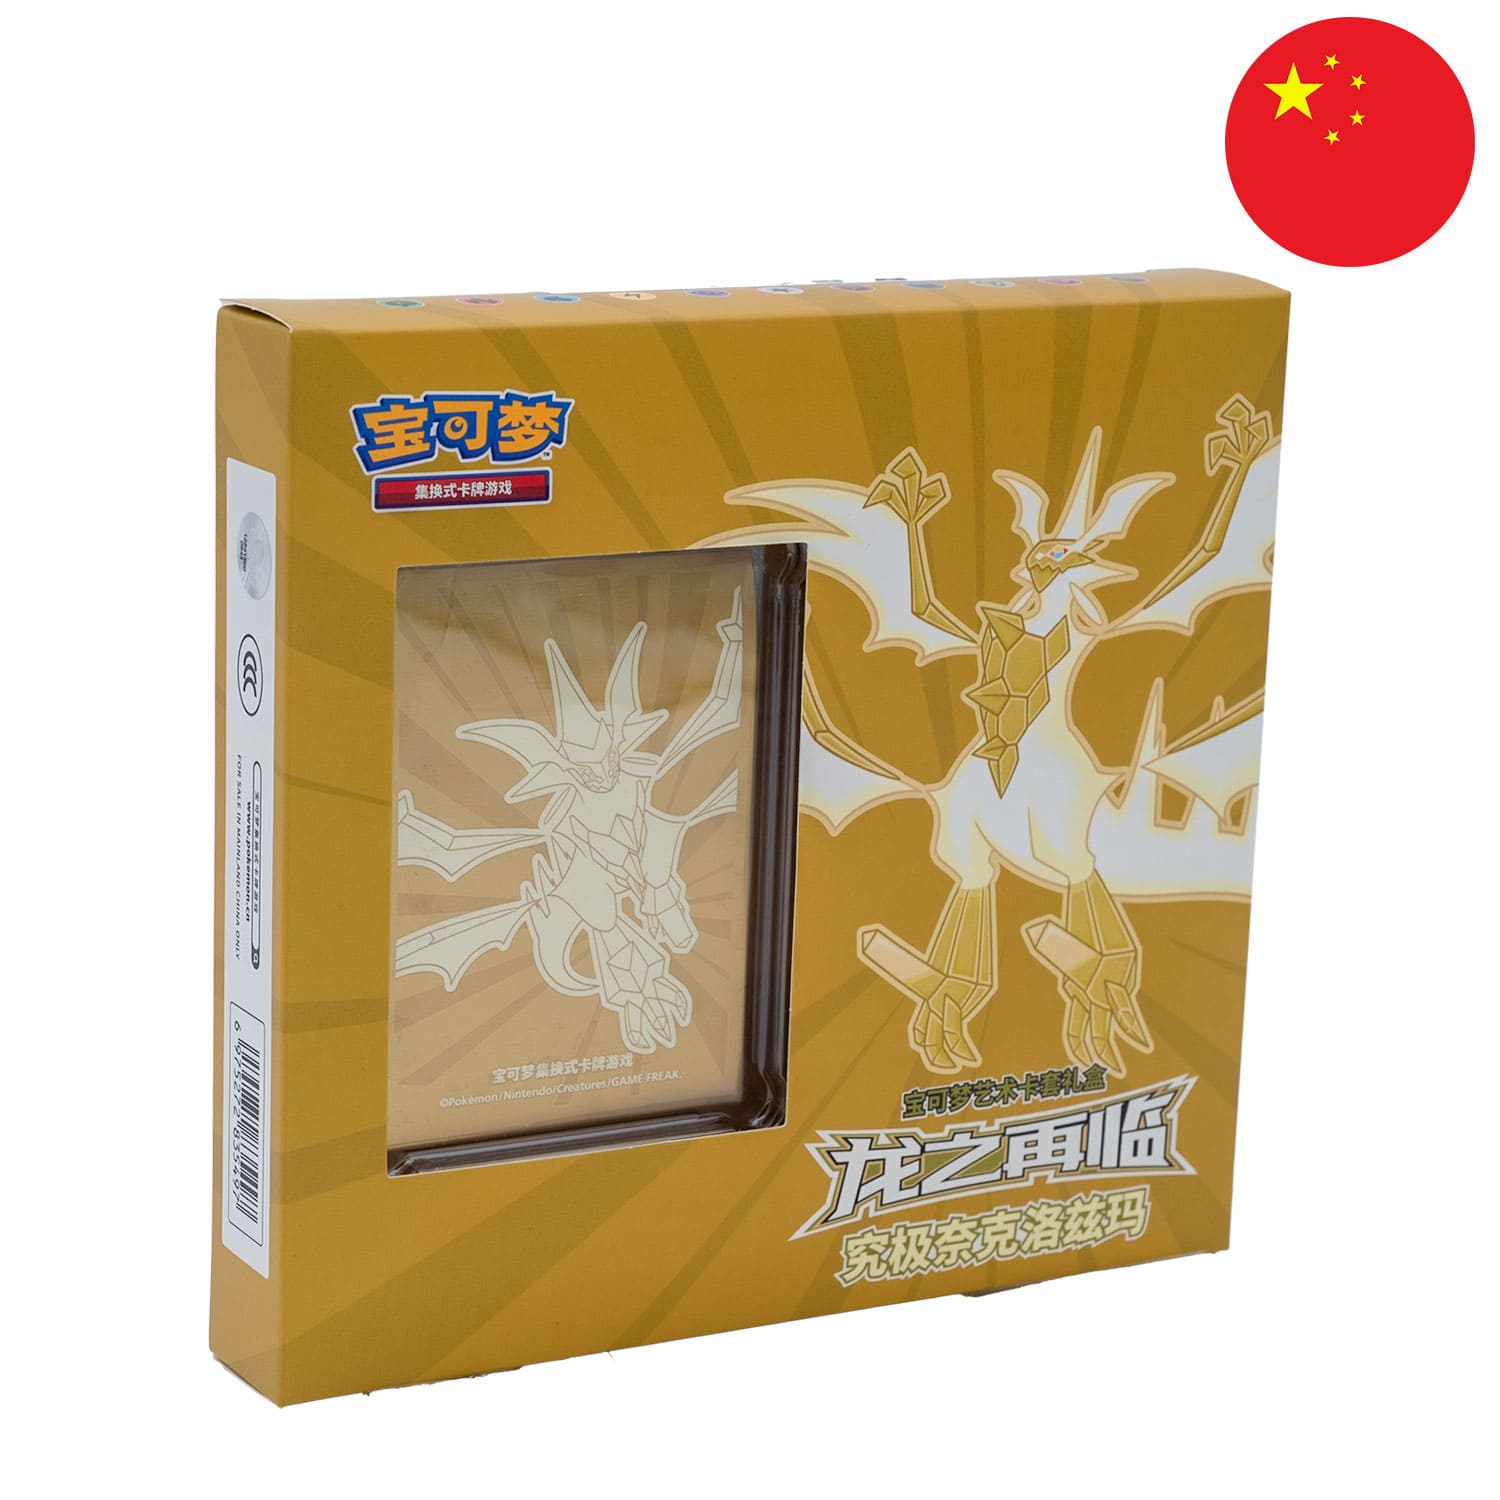 Die gelbe Ultra-Necrozma Sleeve Box aus China, frontal & schräg als Hauptbild mit der Flagge Chinas in der Ecke.